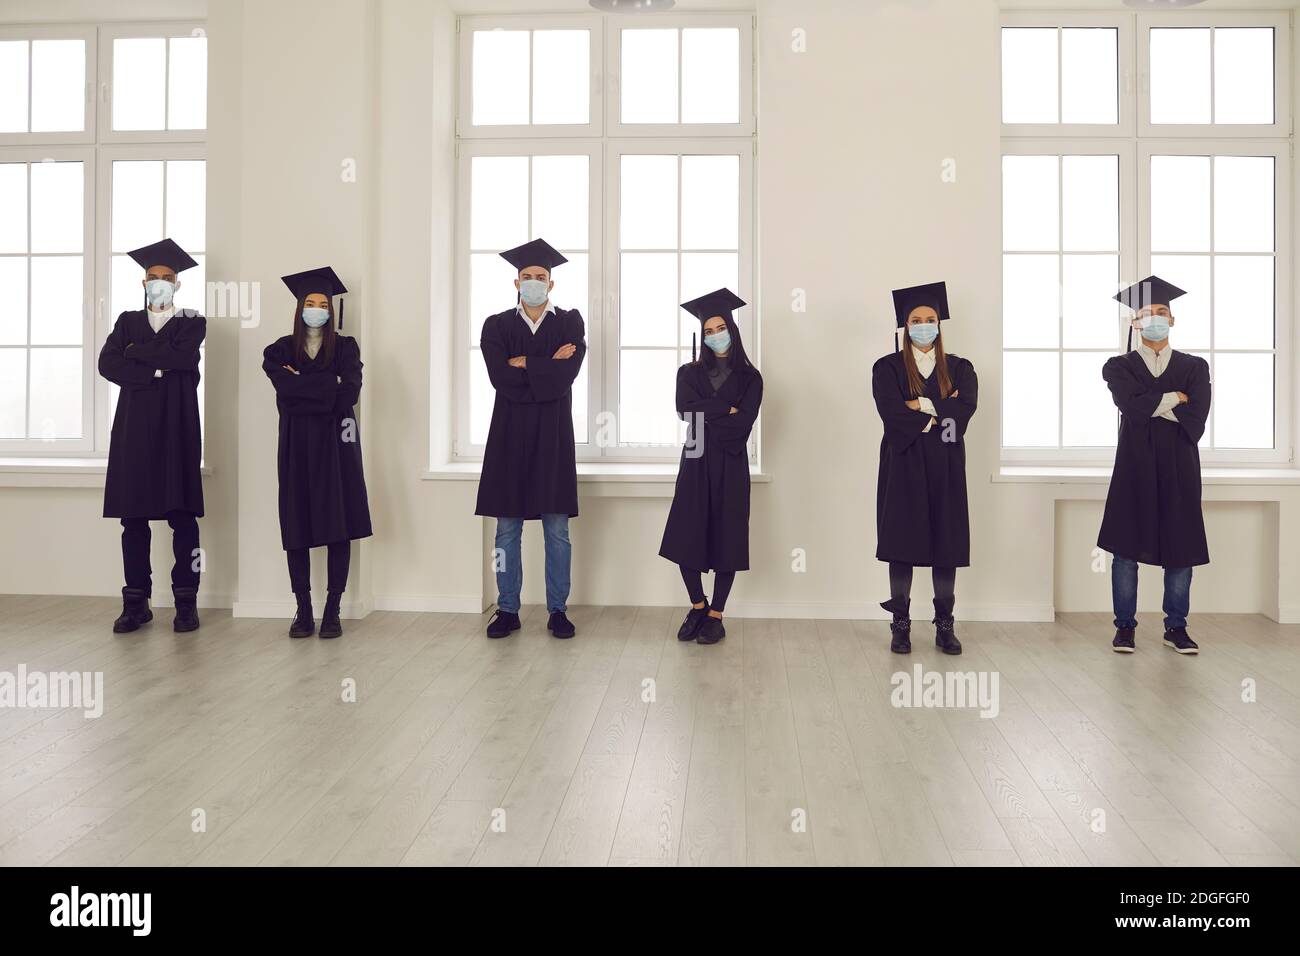 Estudiantes en batas de graduación y máscaras de cara de pie en la sala de la universidad, manteniendo la distancia social Foto de stock